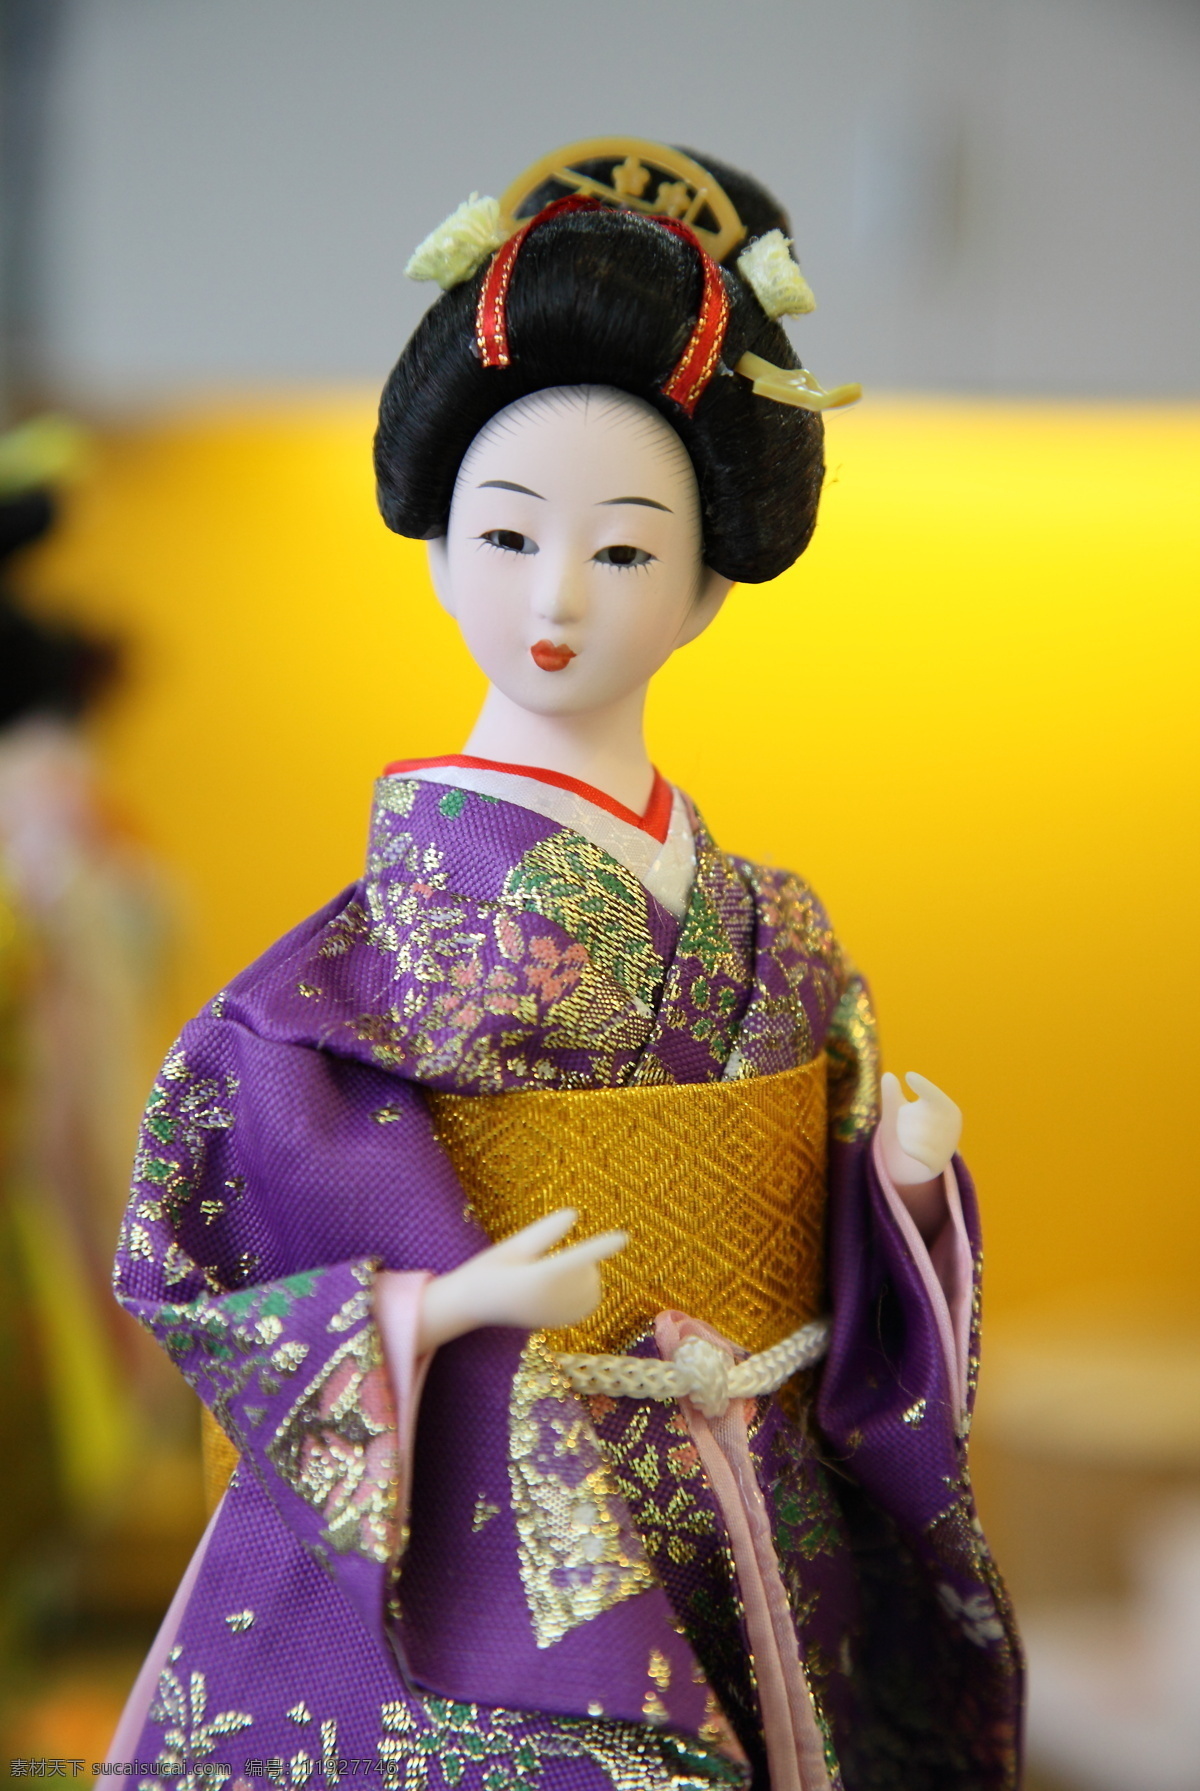 木偶 日本 和服 女子 人偶 摄影工艺品 文化艺术